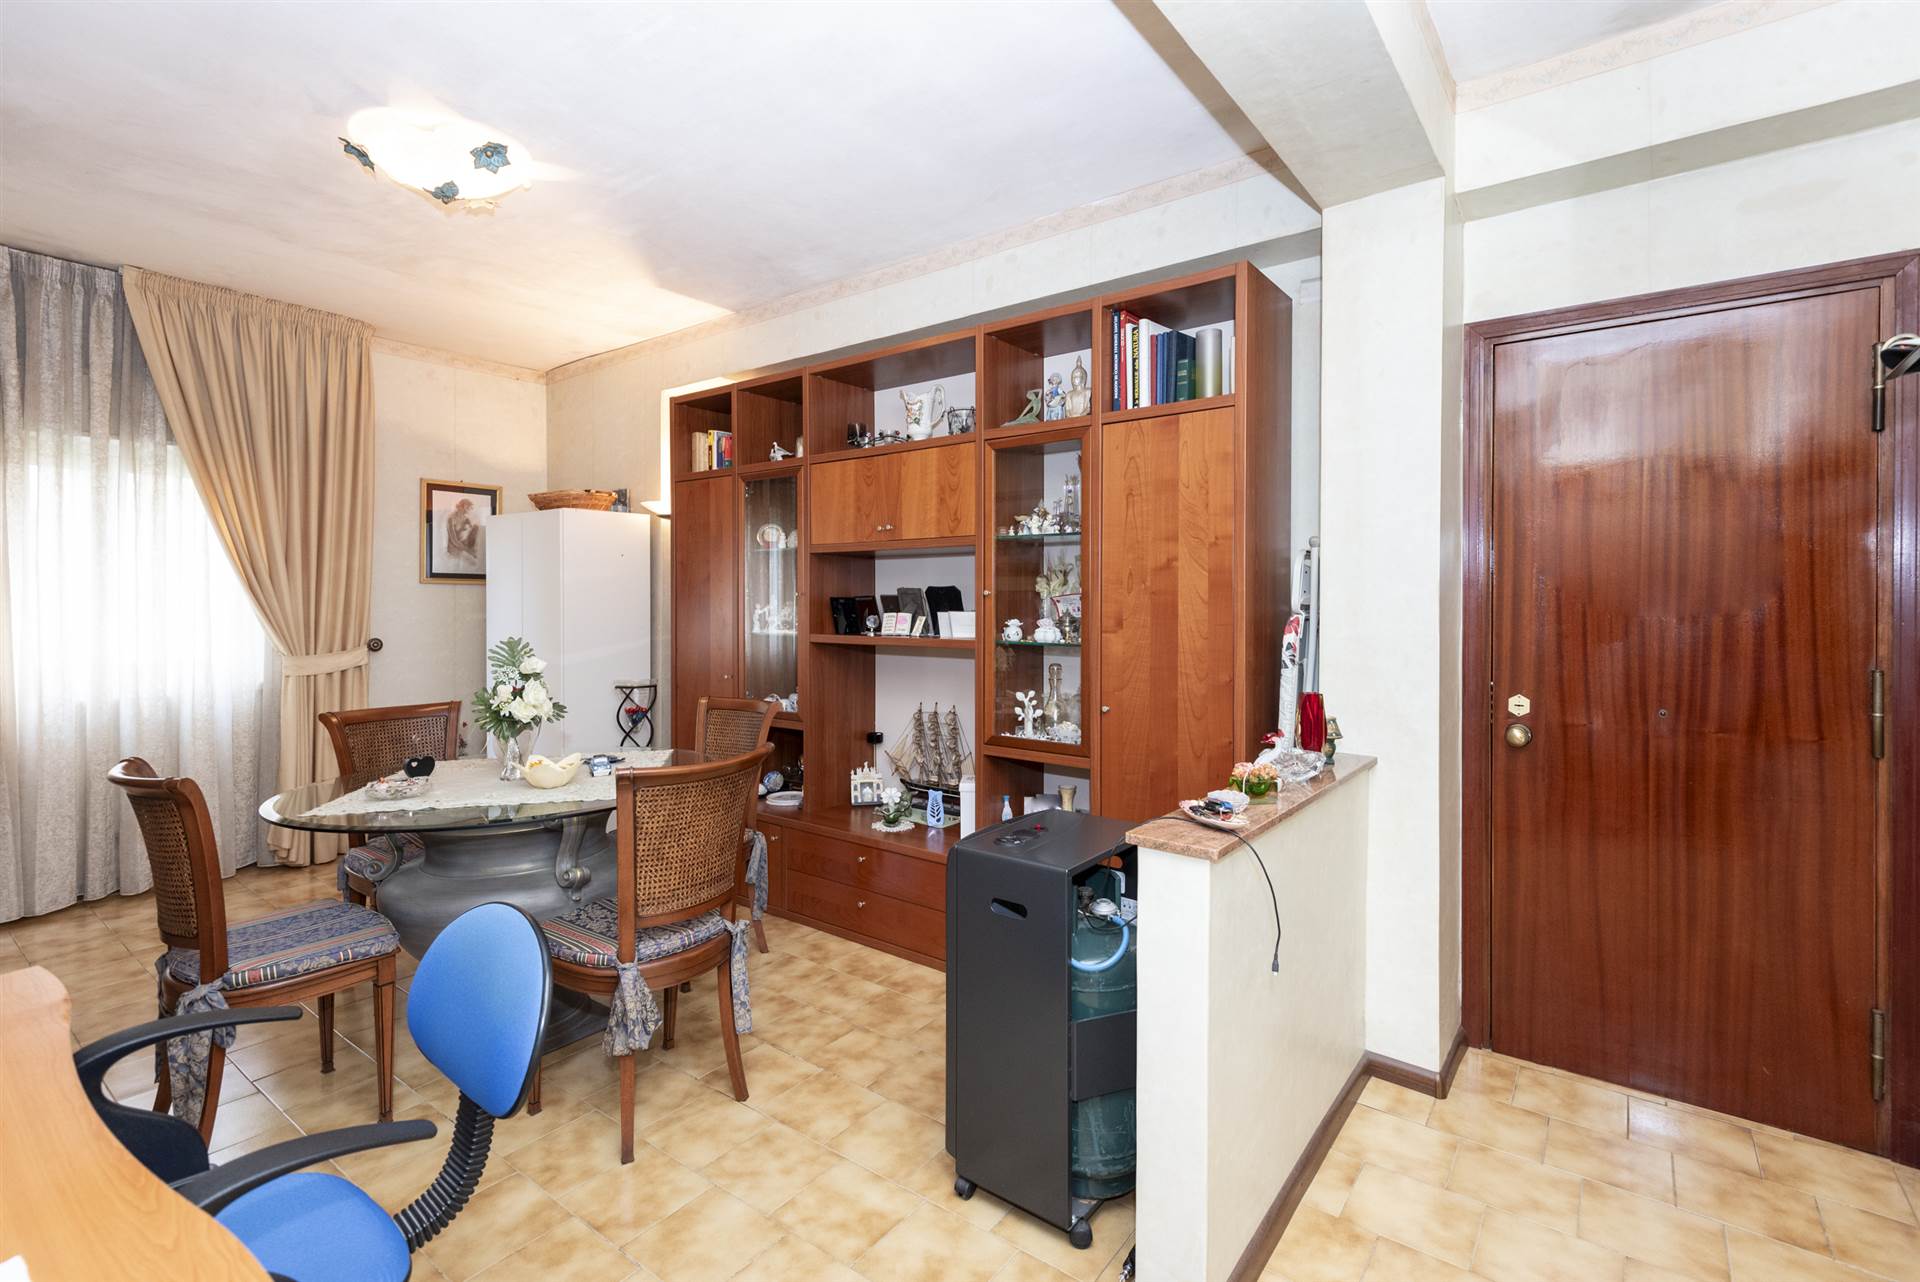 SAN PAOLO, GRAVINA DI CATANIA, Квартира на продажу из 81 Км, Xорошо, на земле 1° на 3, состоит из: 3 Помещения, Отдельная кухня, , 2 Комнаты, 1 